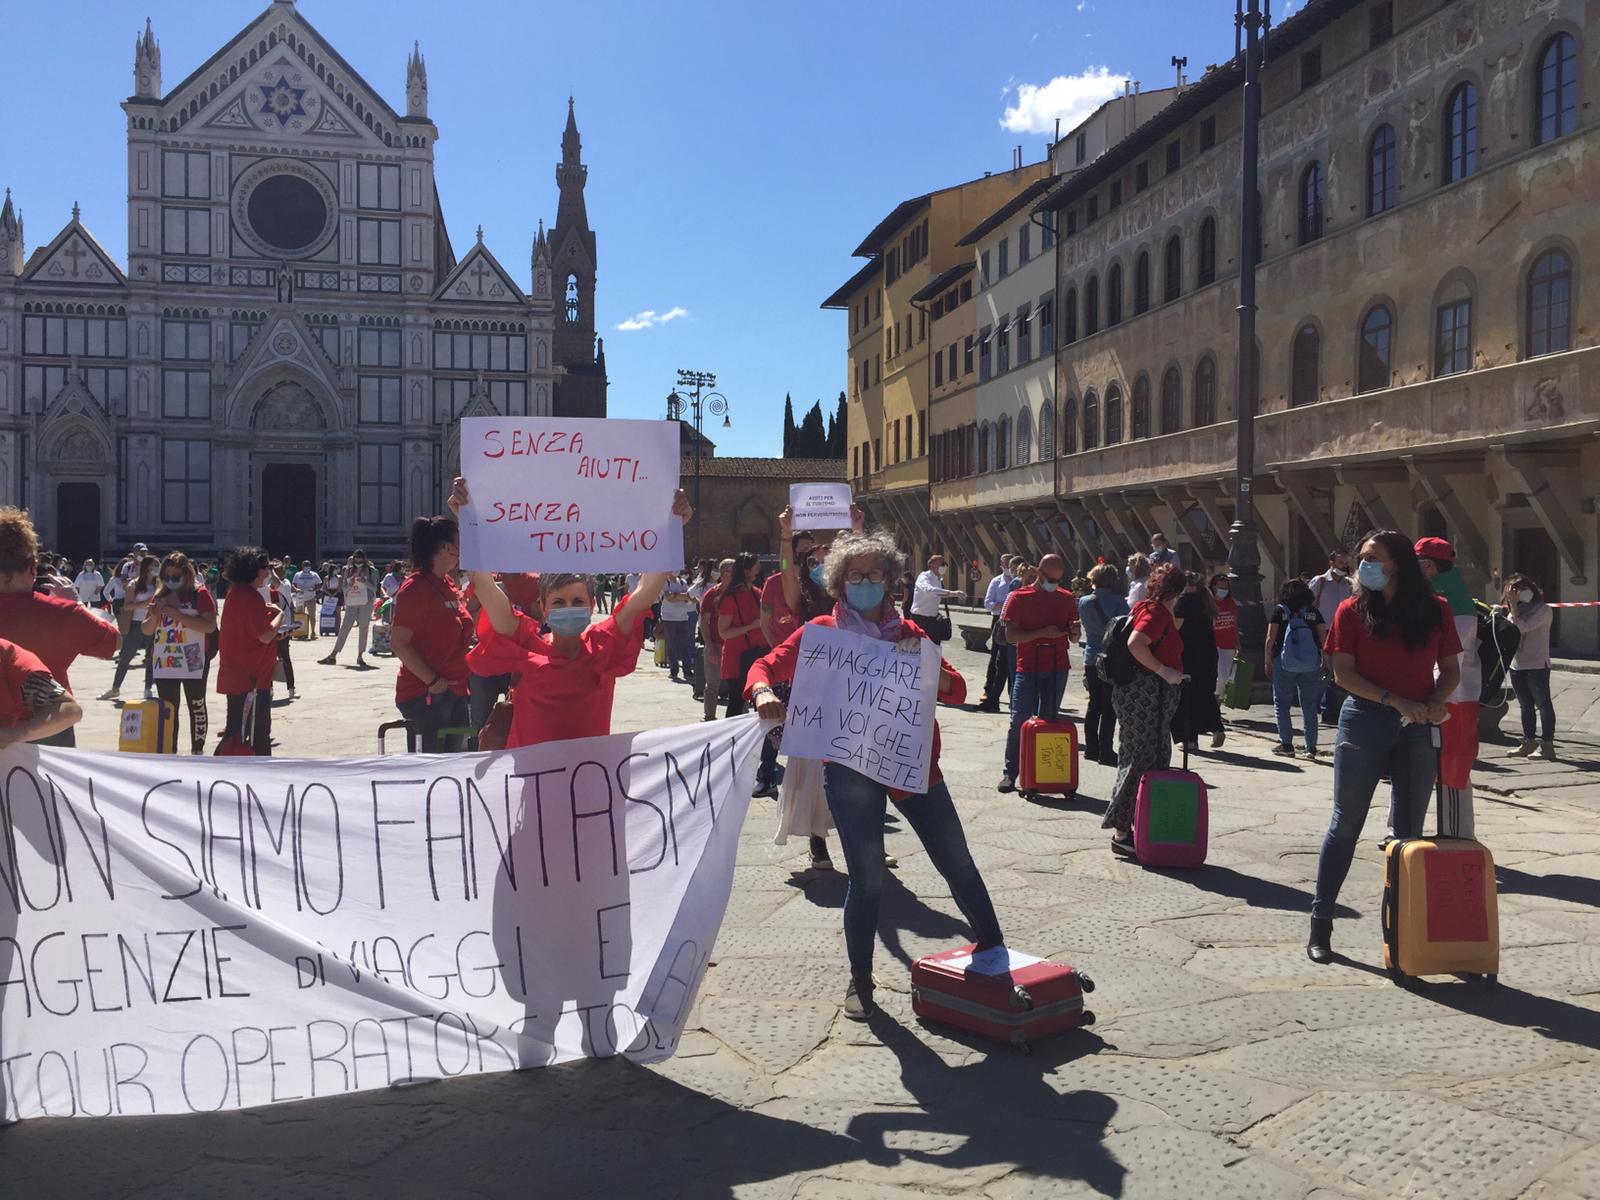 Agenzie di viaggio in piazza Santa Croce: ‘senza aiuti, senza turismo’